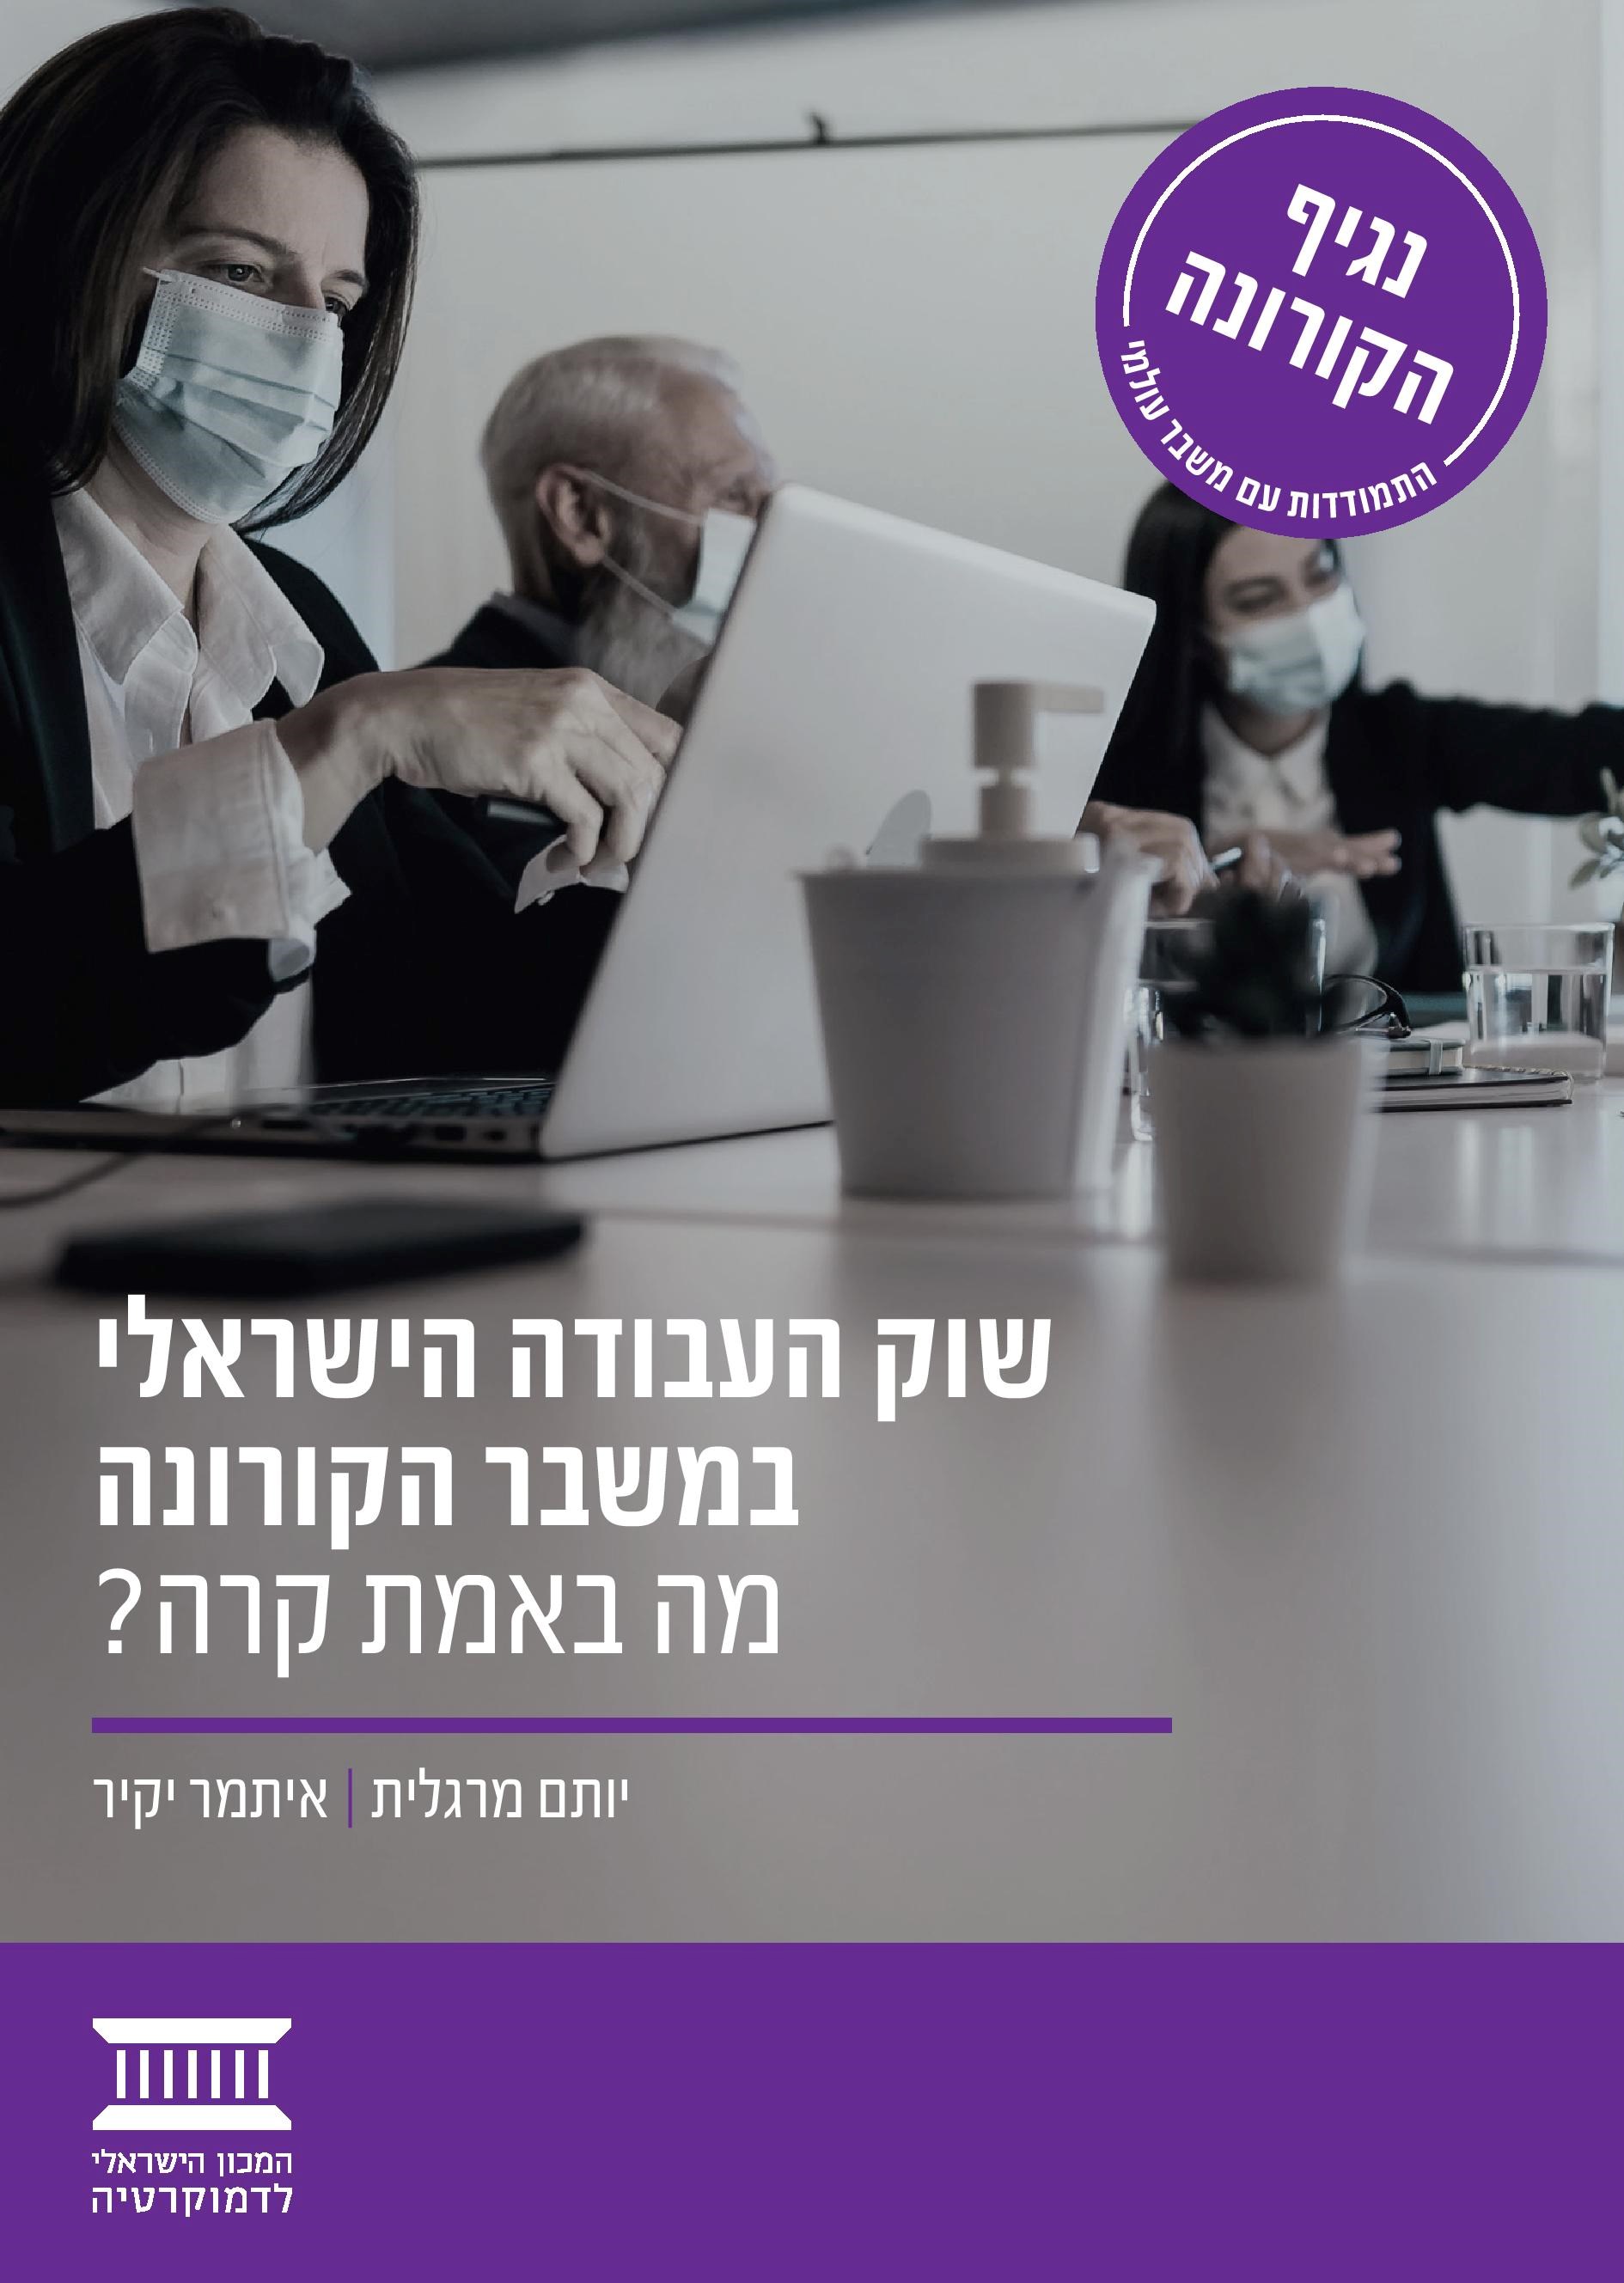 שוק העבודה הישראלי במשבר הקורונה – מה באמת קרה?